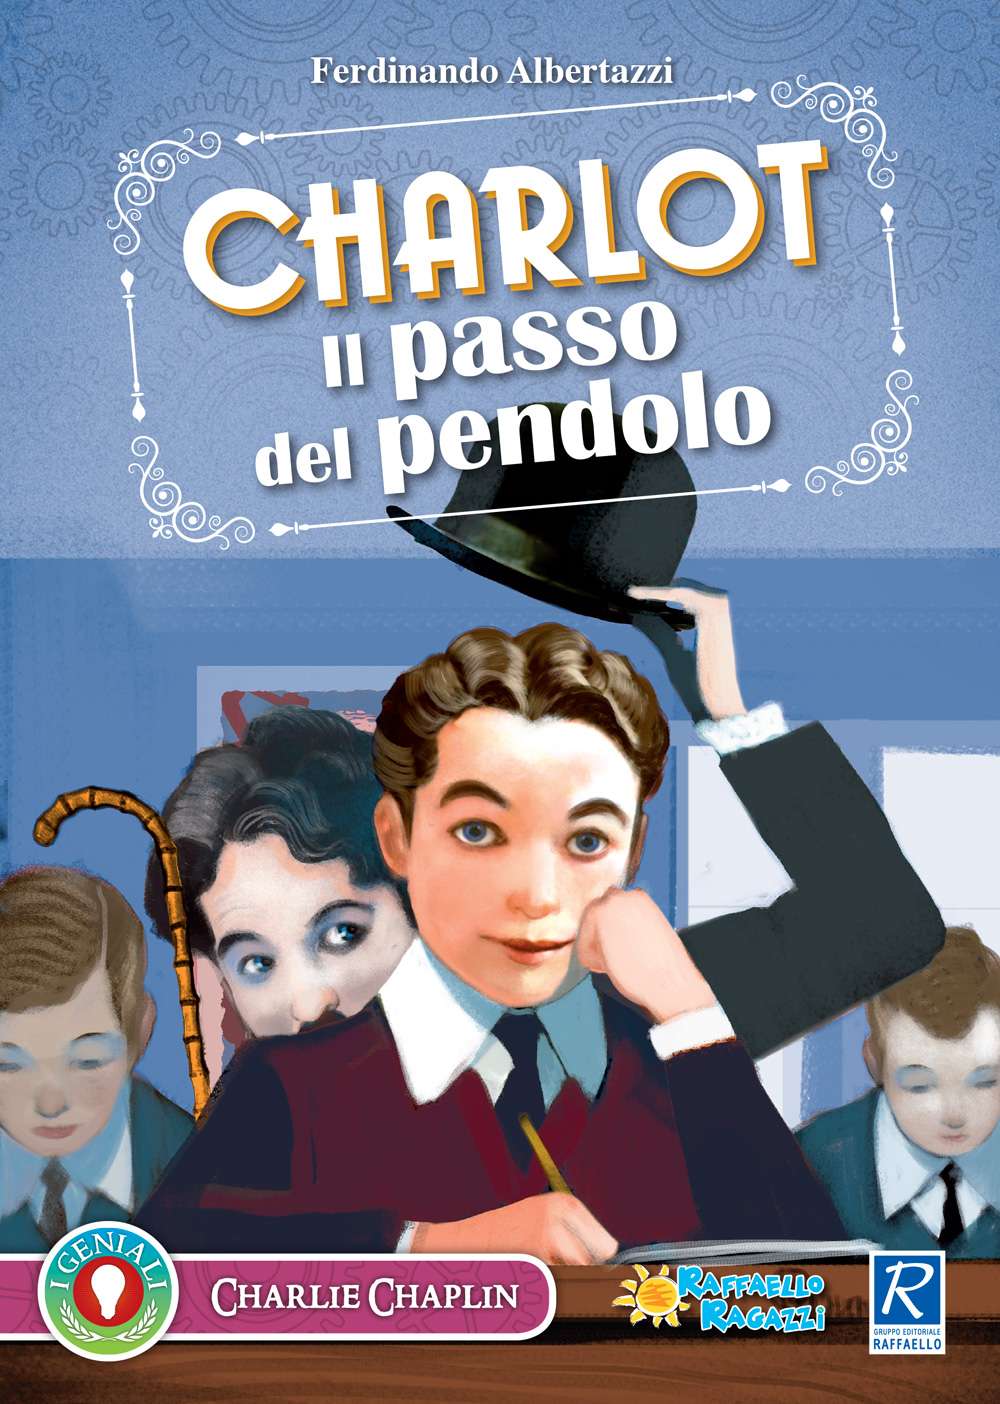 Charlot - Il passo del pendolo